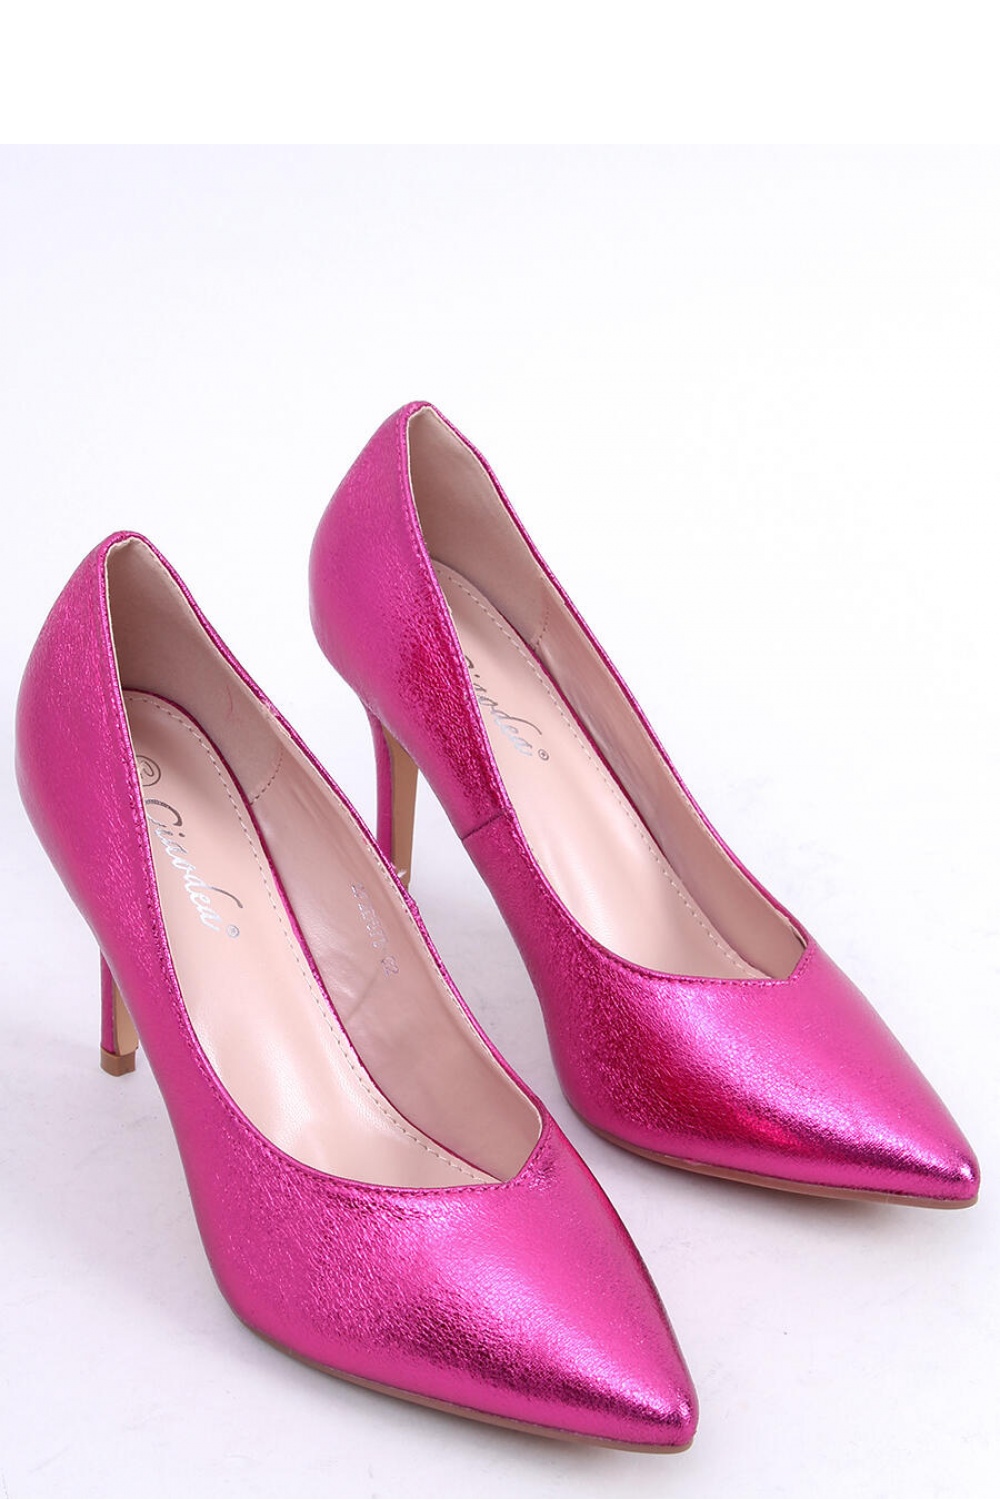 High heels model 173571 Inello